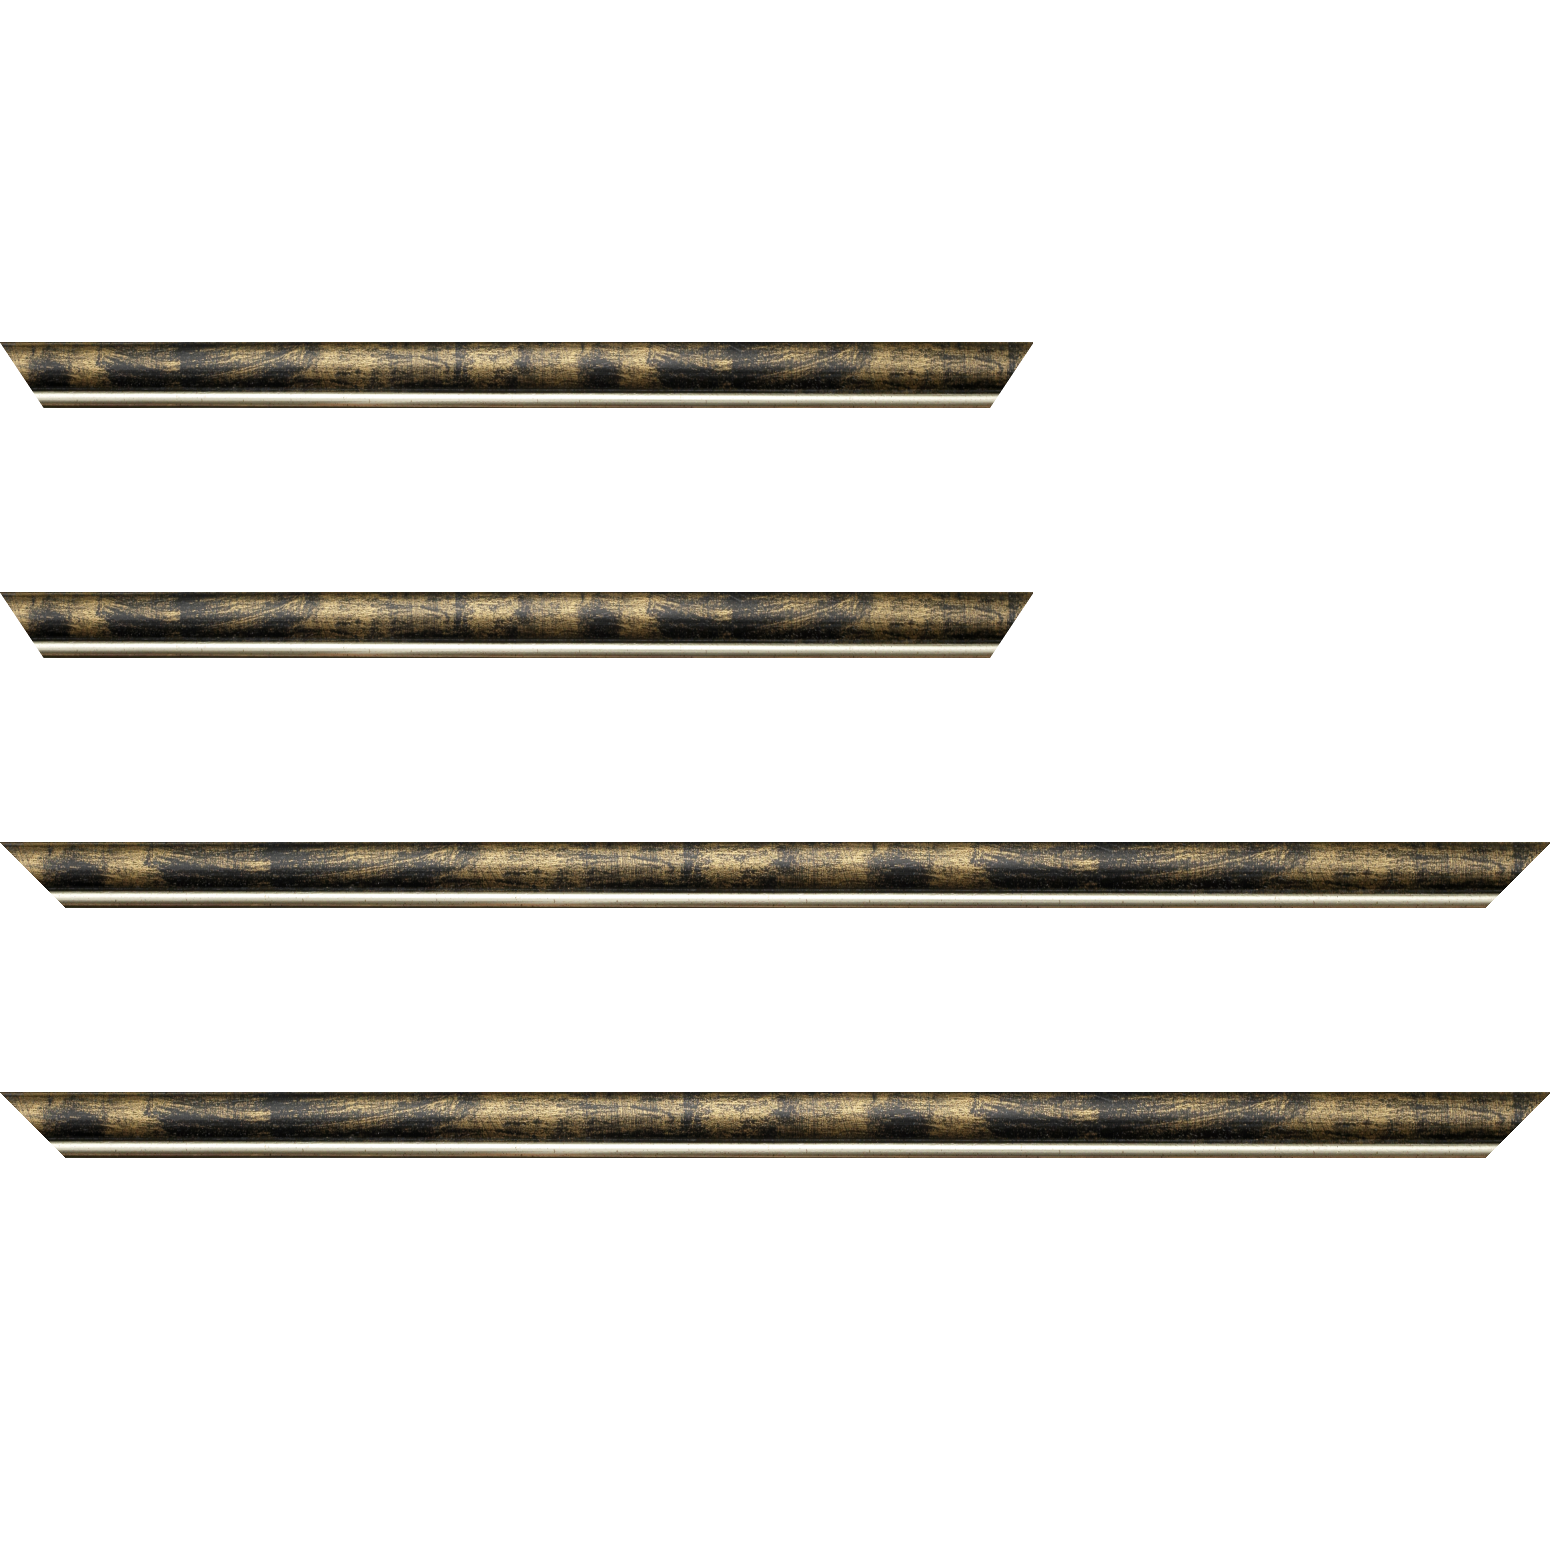 Baguette bois profil arrondi largeur 2.1cm  couleur noir fond or filet argent chaud - 35x24